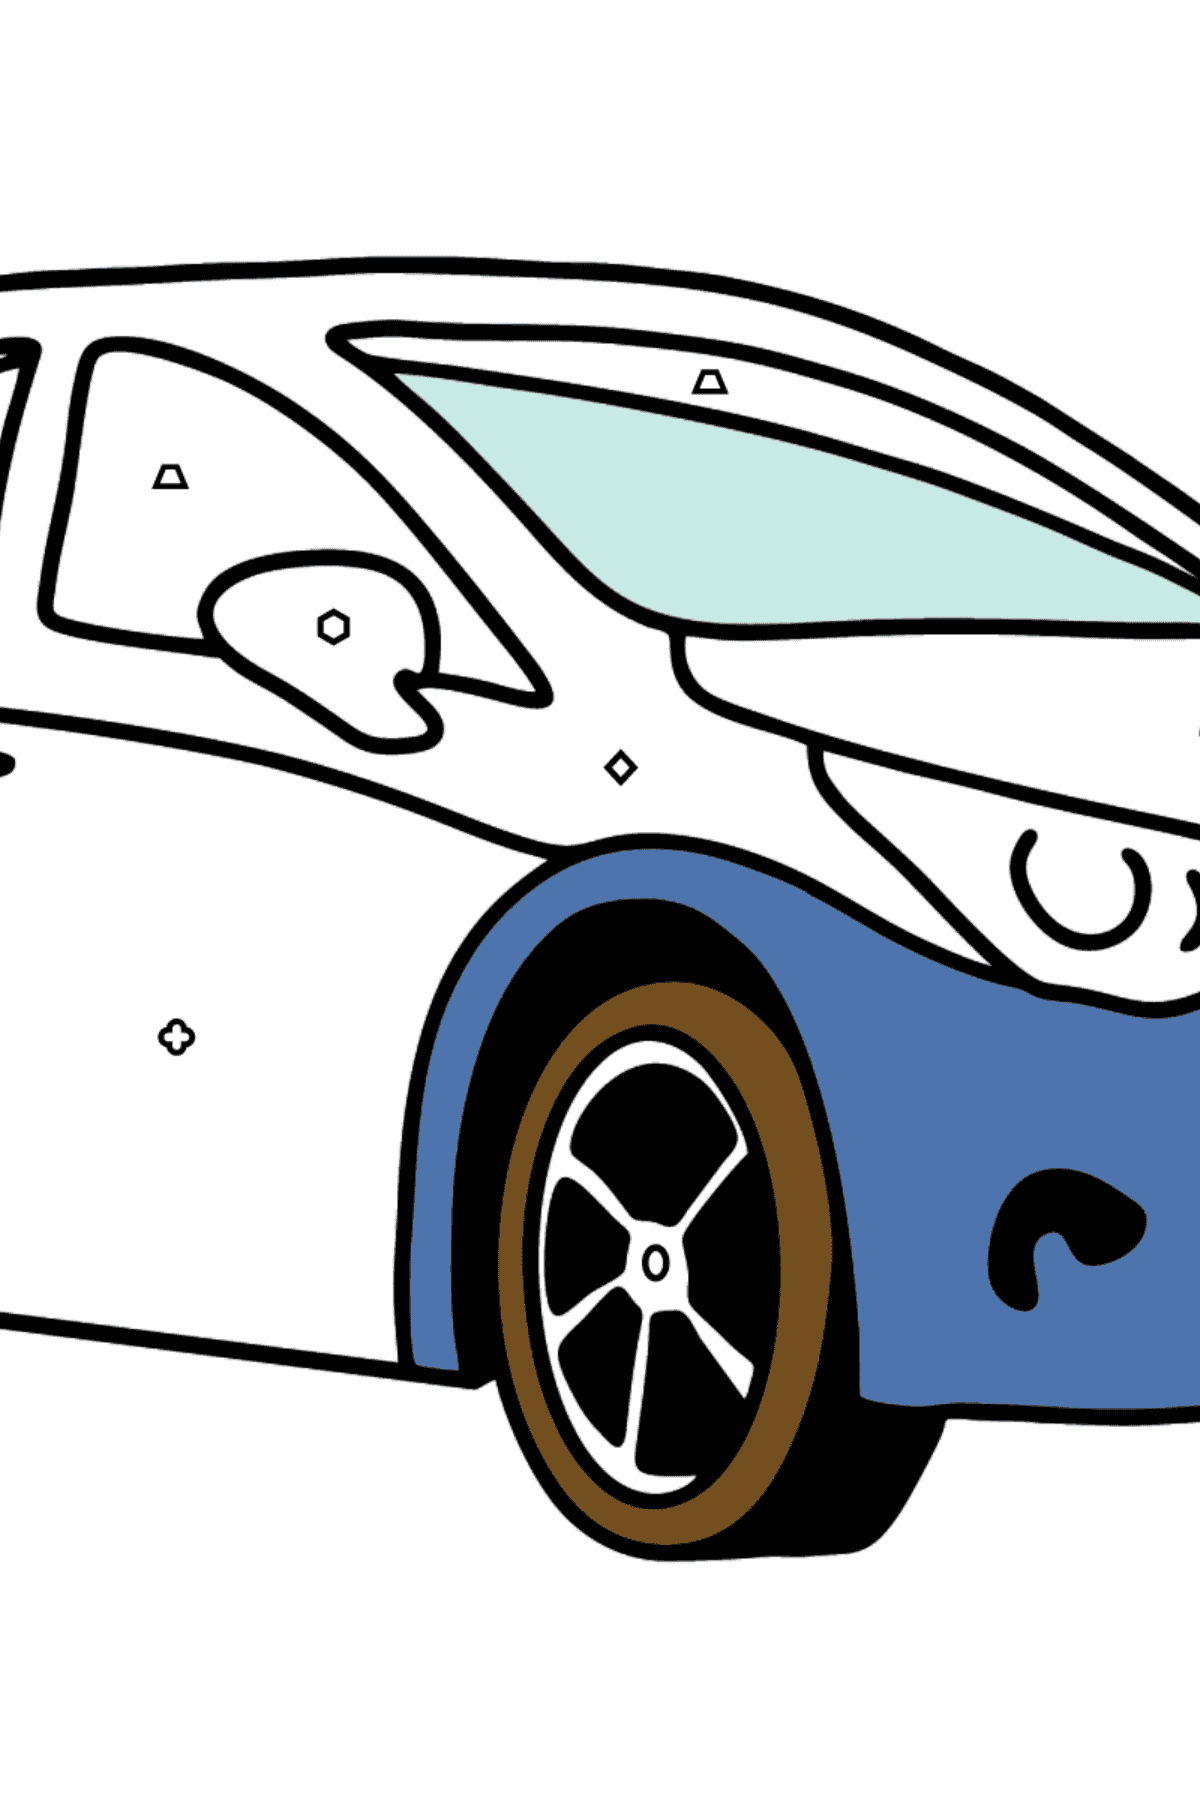 Kolorowanka Samochód Toyota Avensis - Kolorowanie według figur geometrycznych dla dzieci